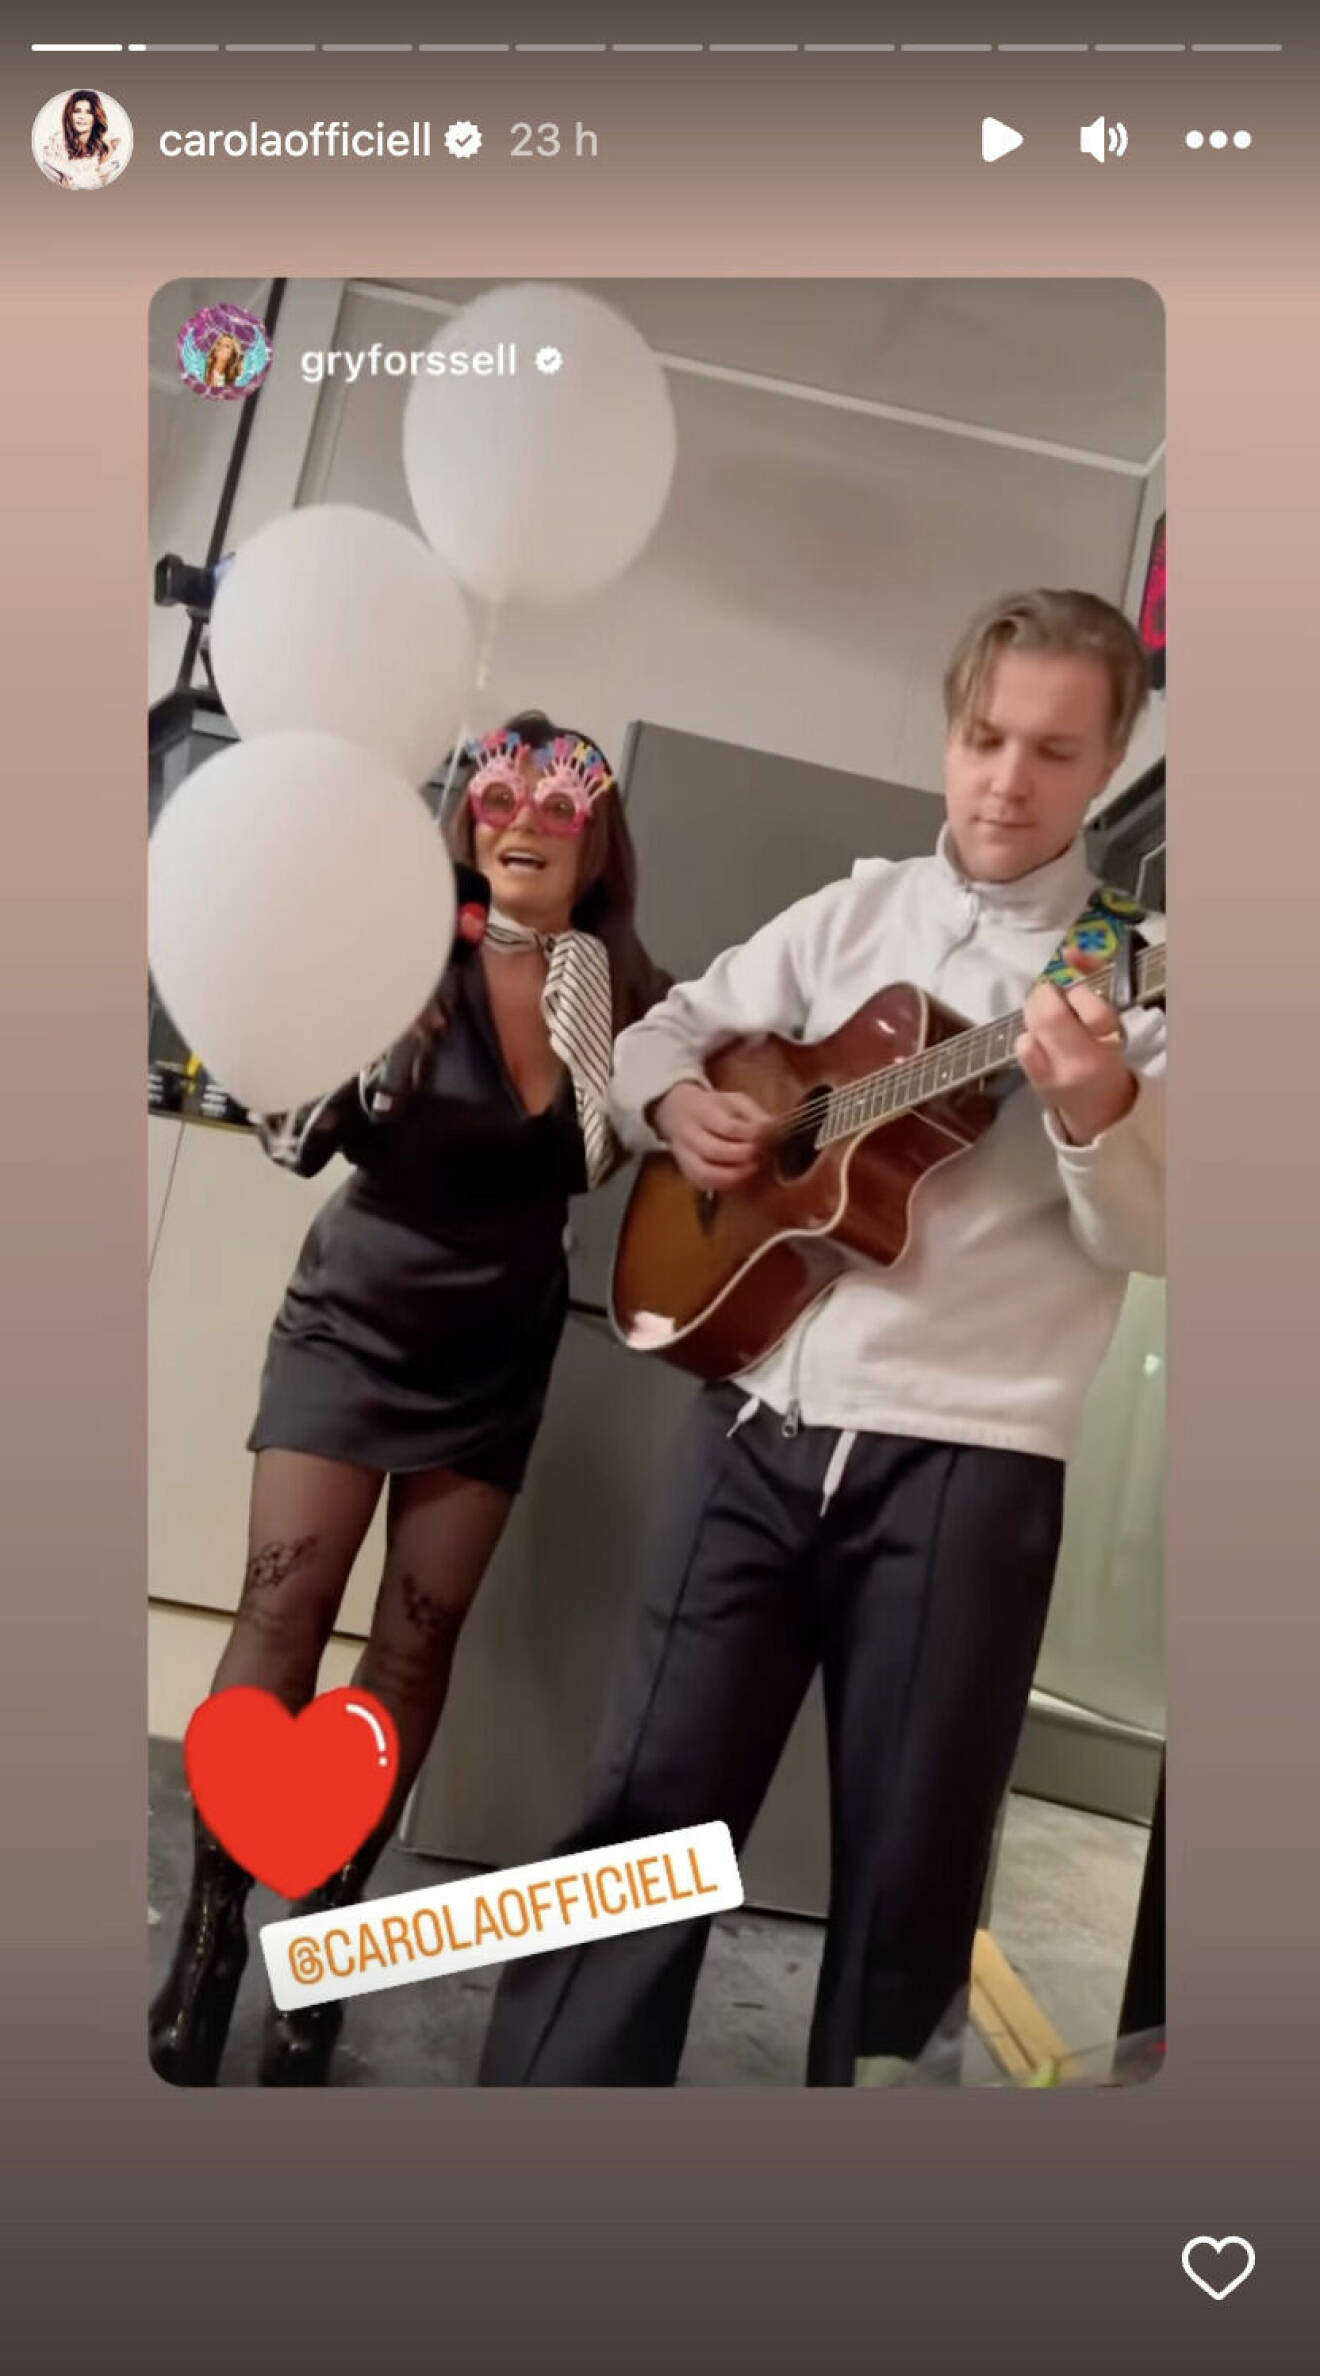 Carola med ballonger och en mikrofon som sjunger för Gry Forsell på hennes födelsedag